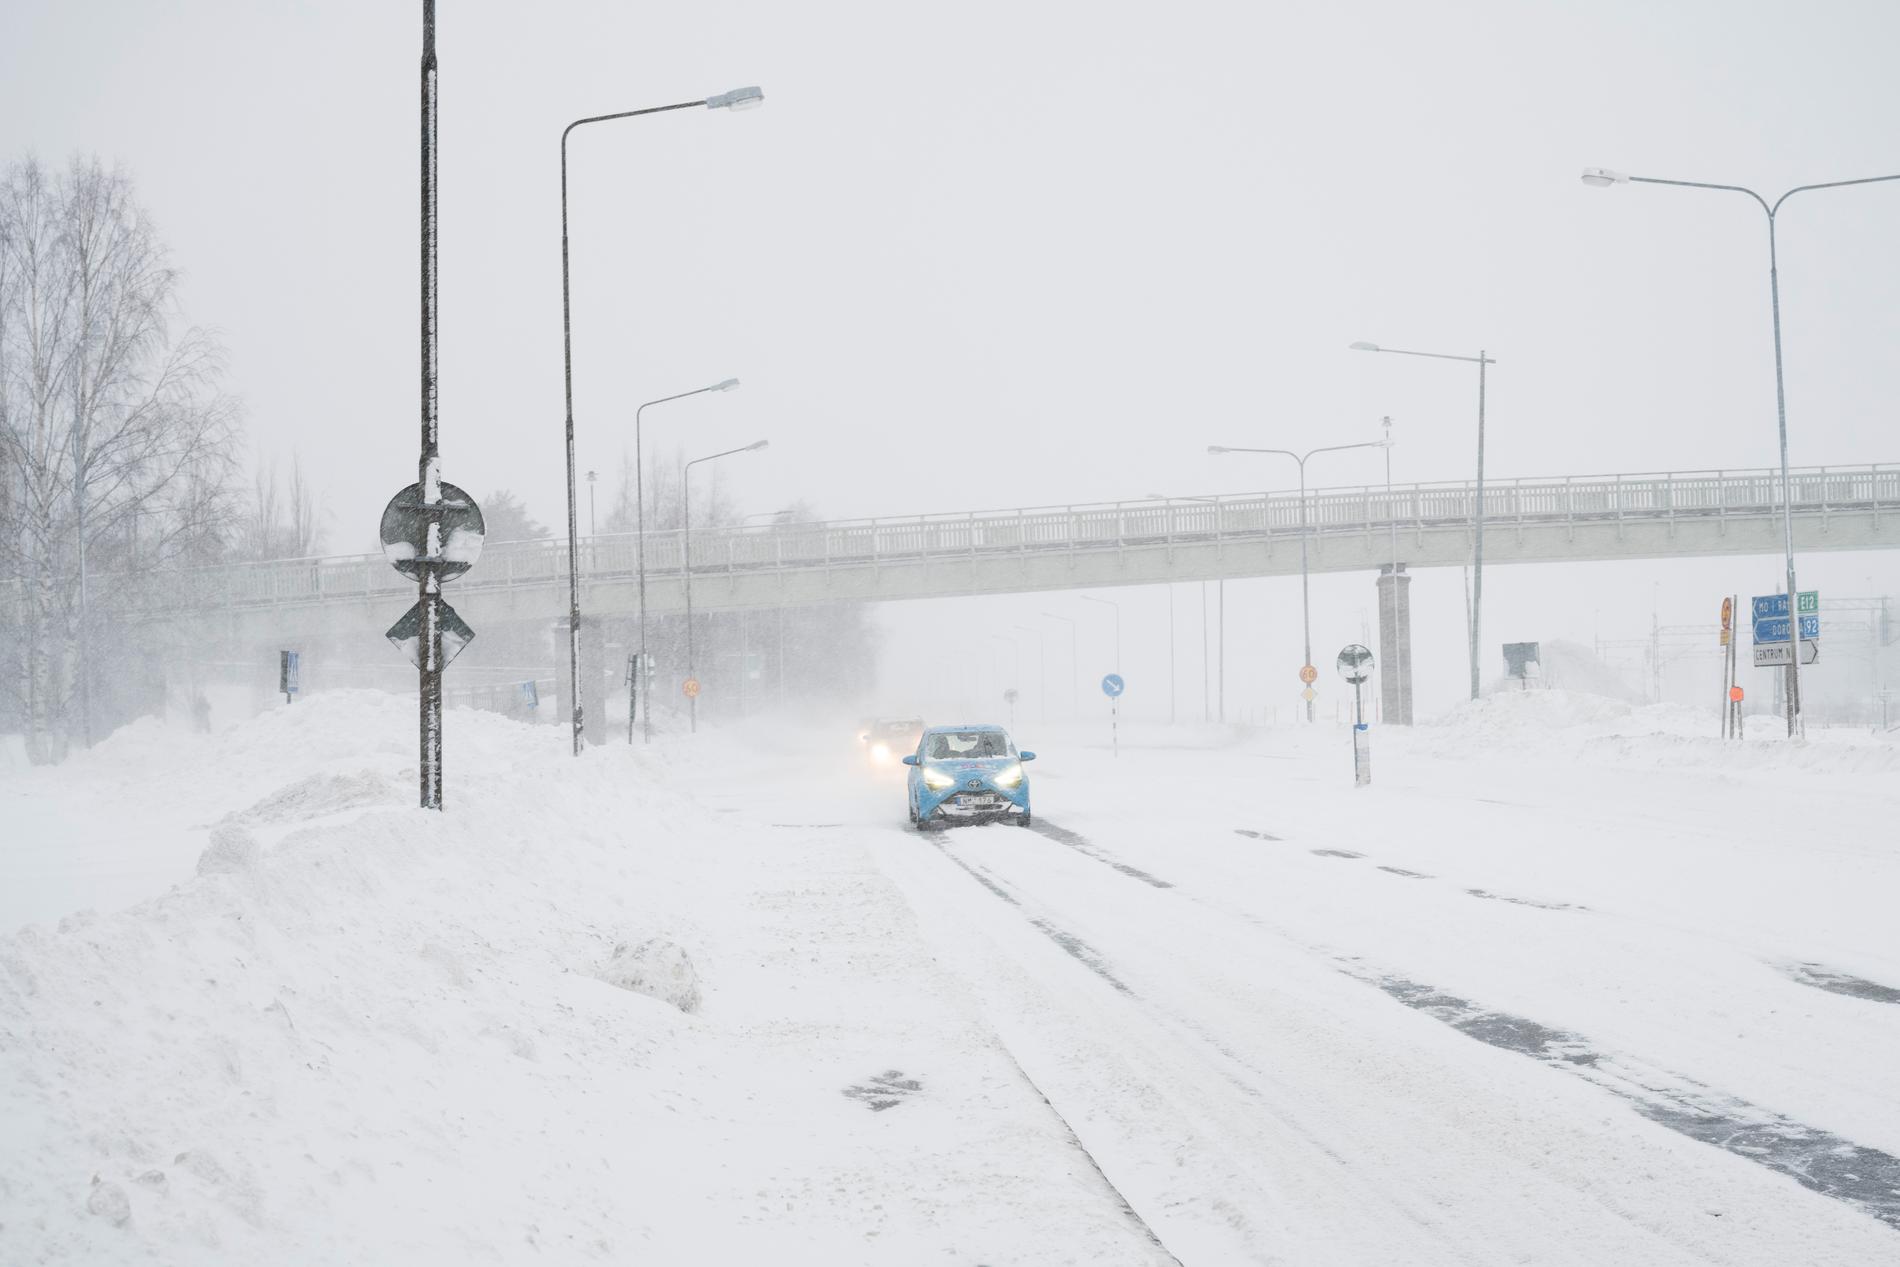 Trafik i ett snöigt Umeå på tisdagen.